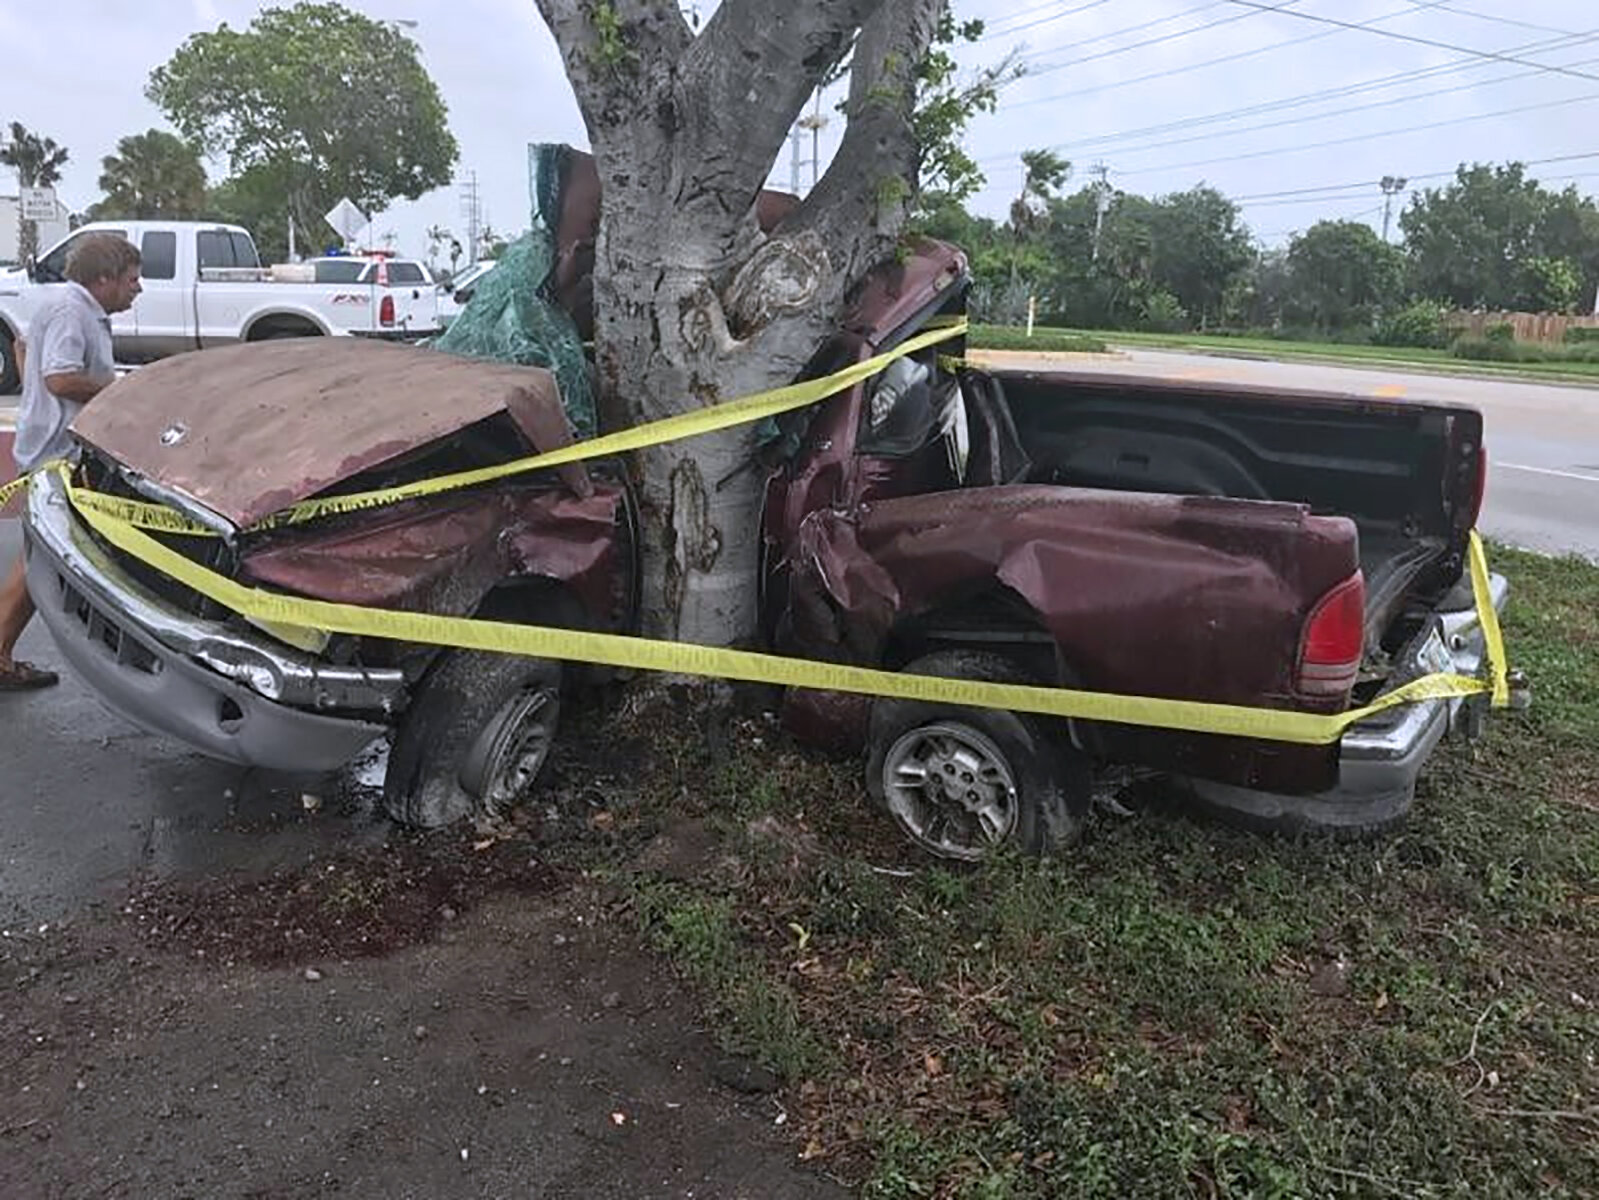 <p>Одной из первых жертв урагана стал водитель автомобиля, который врезался в дерево. Это произошло 9 сентября.</p>

<p>&nbsp;</p>